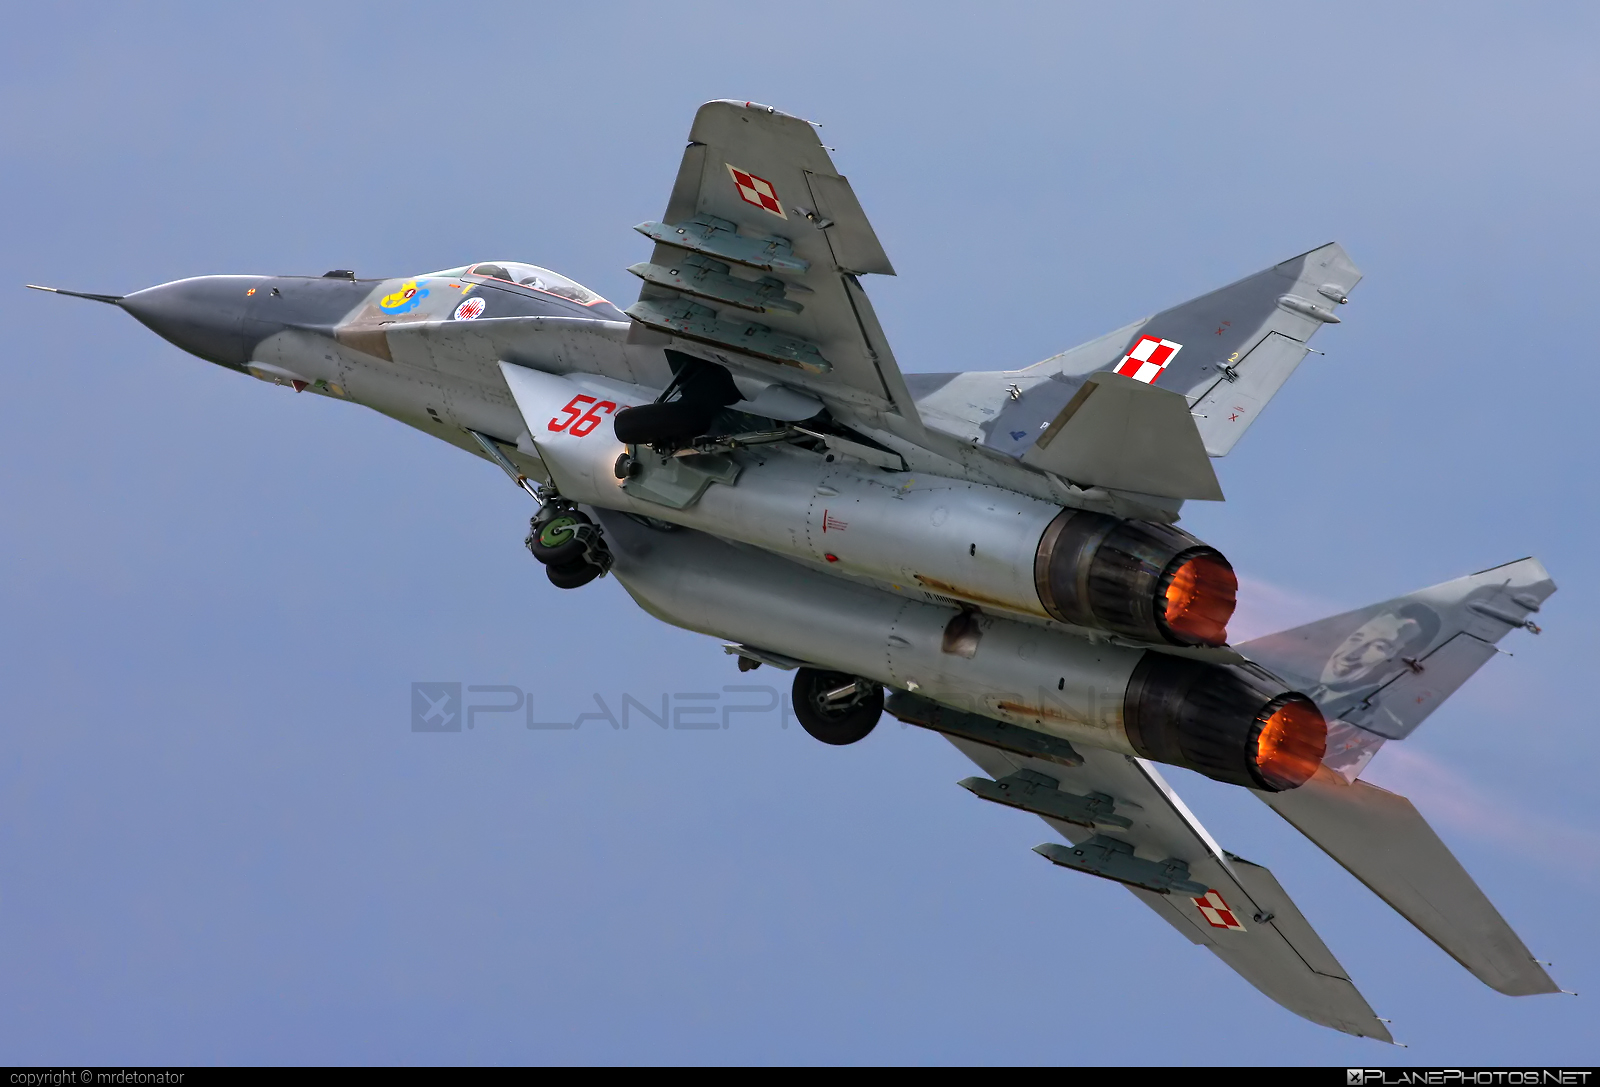 Mikoyan-Gurevich MiG-29A - 56 operated by Siły Powietrzne Rzeczypospolitej Polskiej (Polish Air Force) #mig #mig29 #mig29a #mikoyangurevich #polishairforce #silypowietrzne